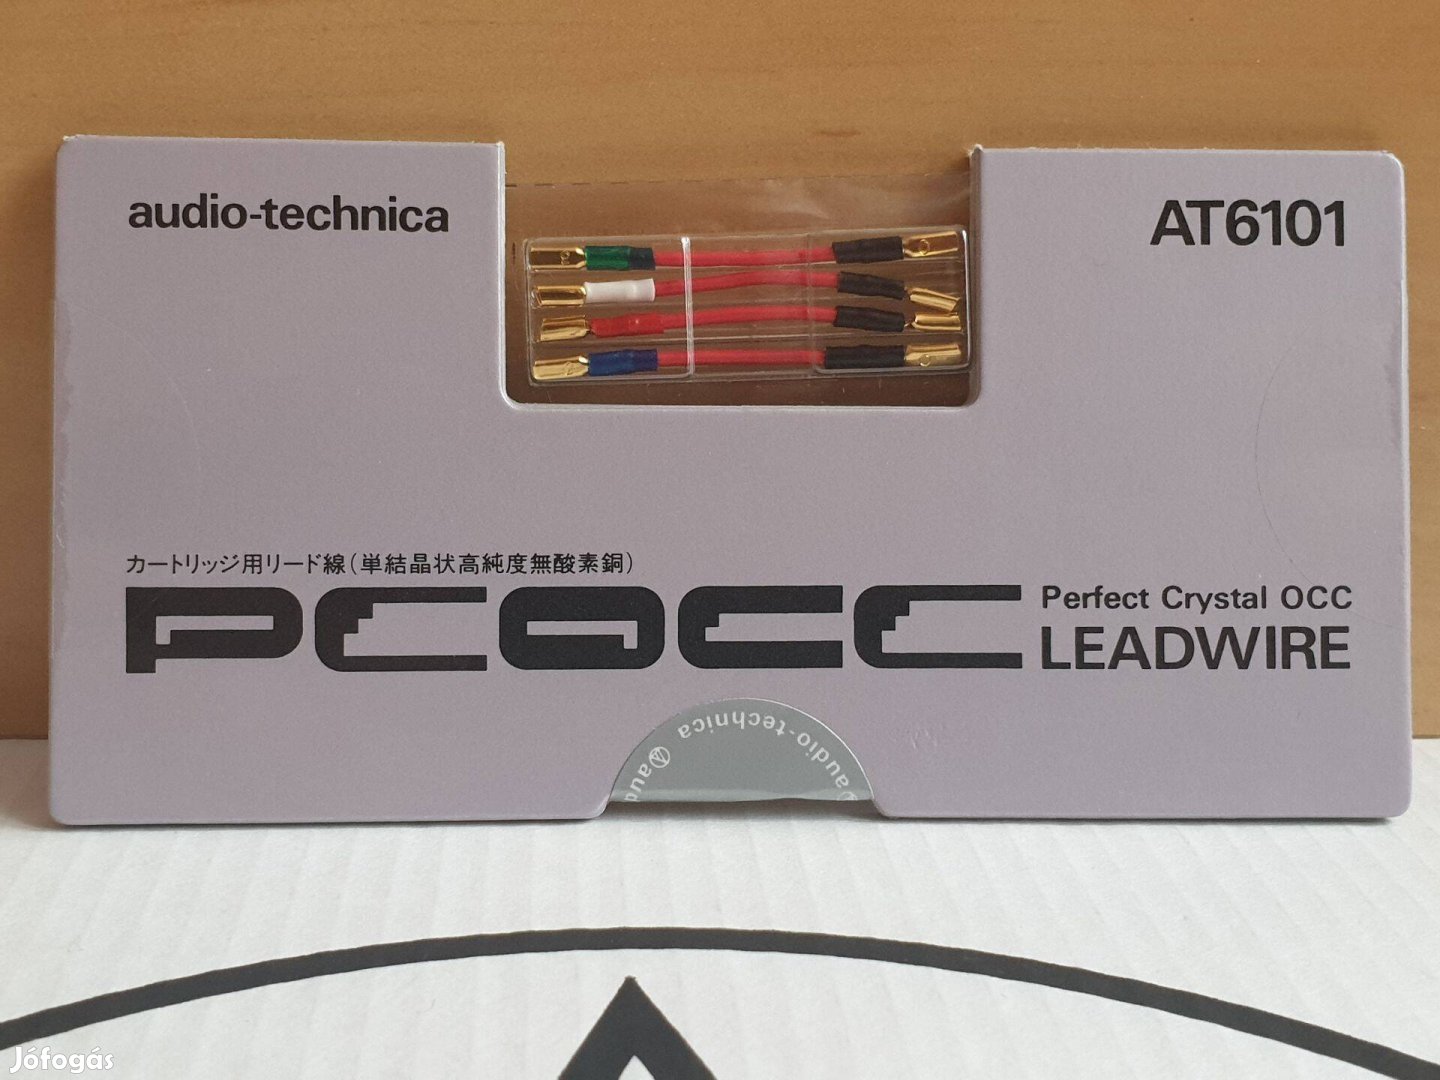 Audio-technica 24K GOLD -Japan gyártás- headshell kábel készlet Új